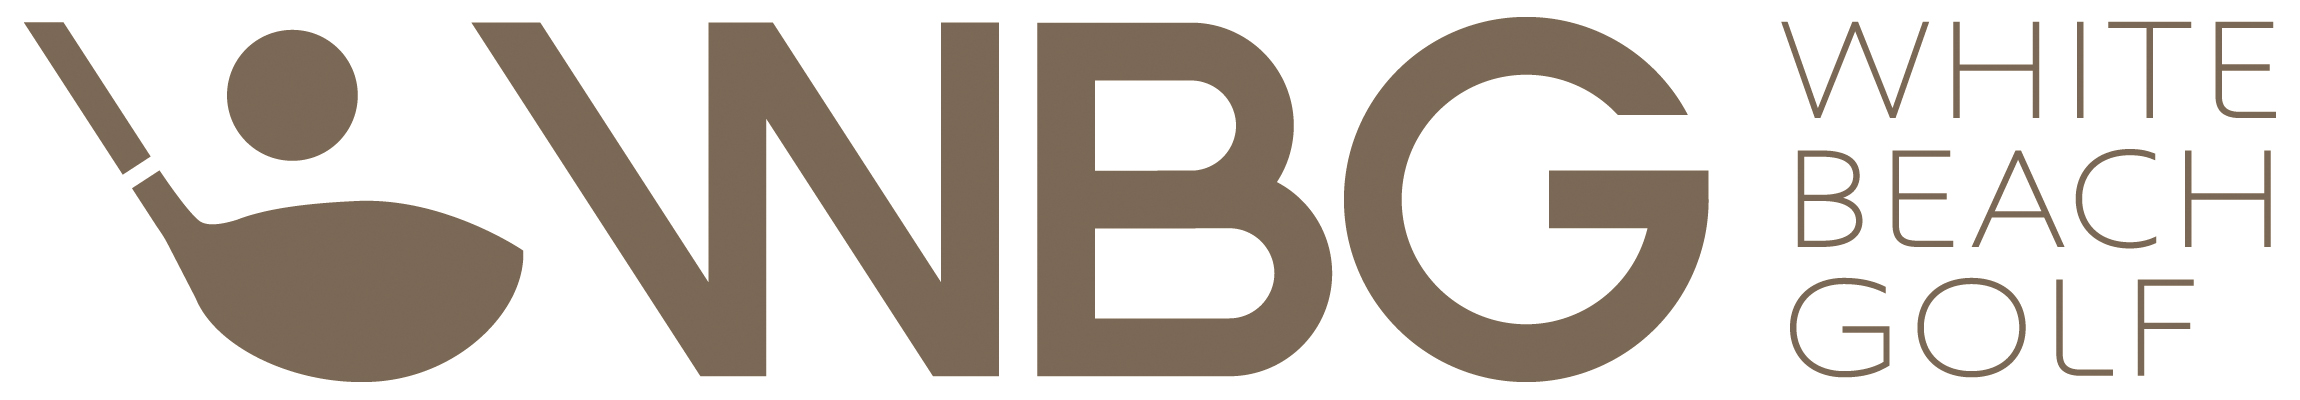 WBG_logo-1